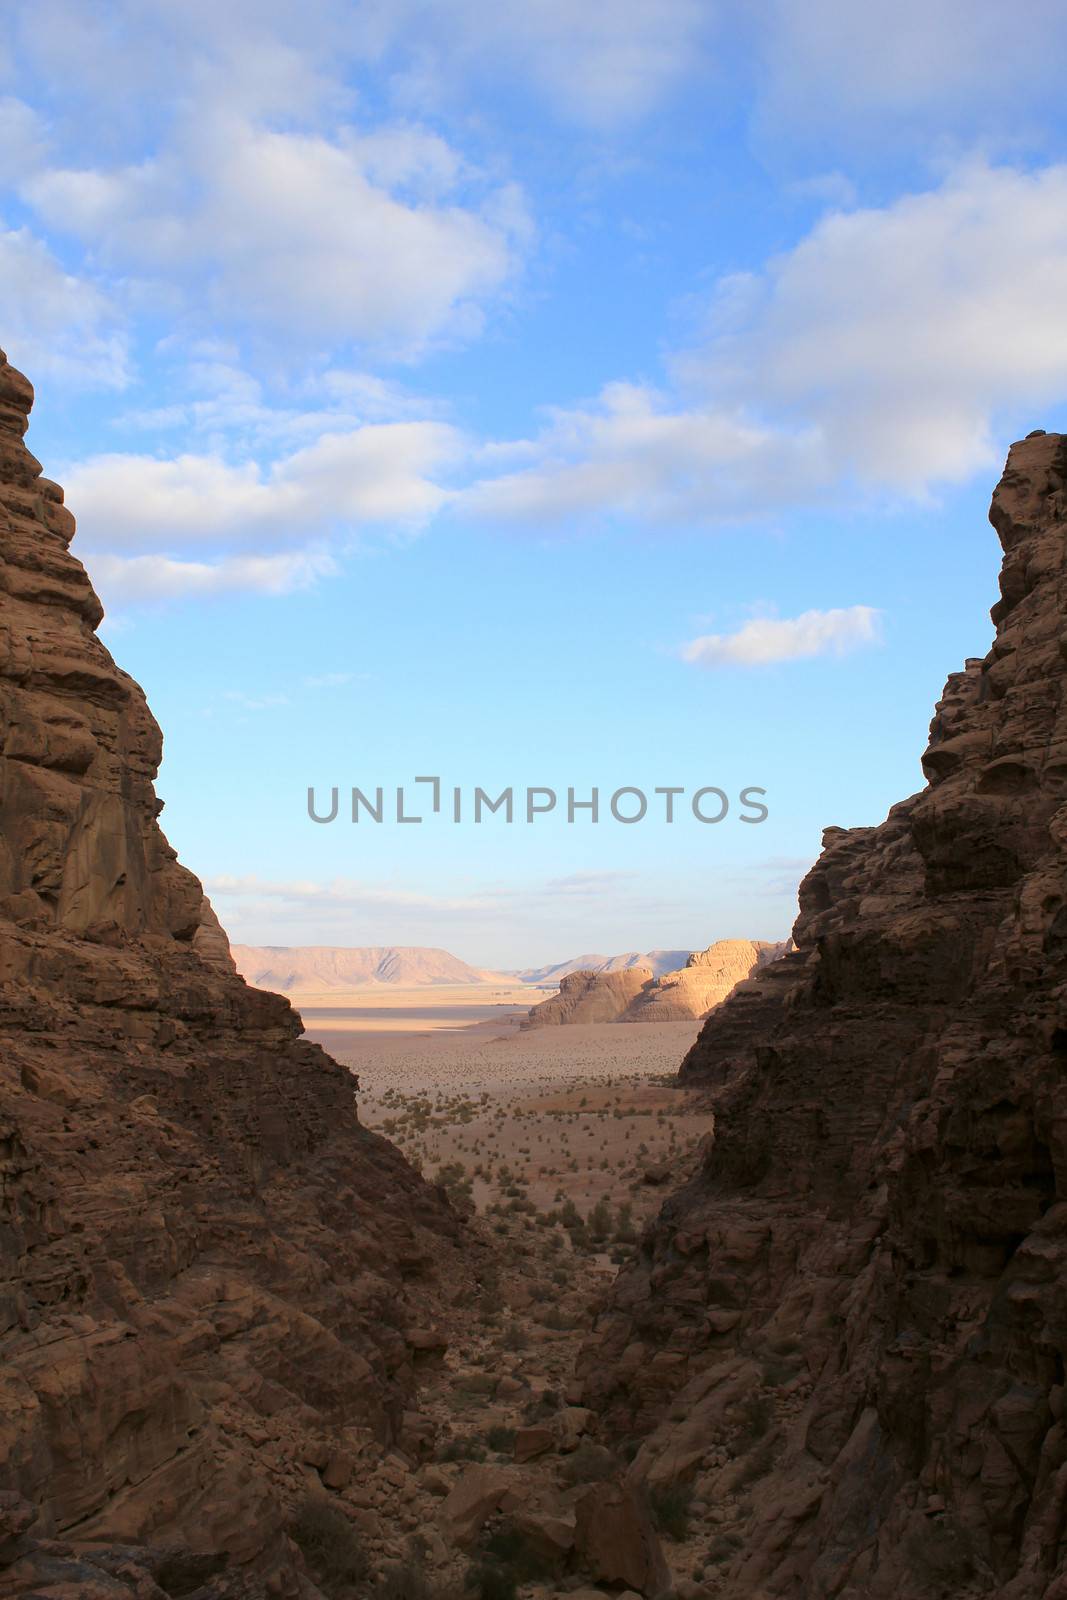 Wadi Rum Desert beautiful landscape. Jordan.